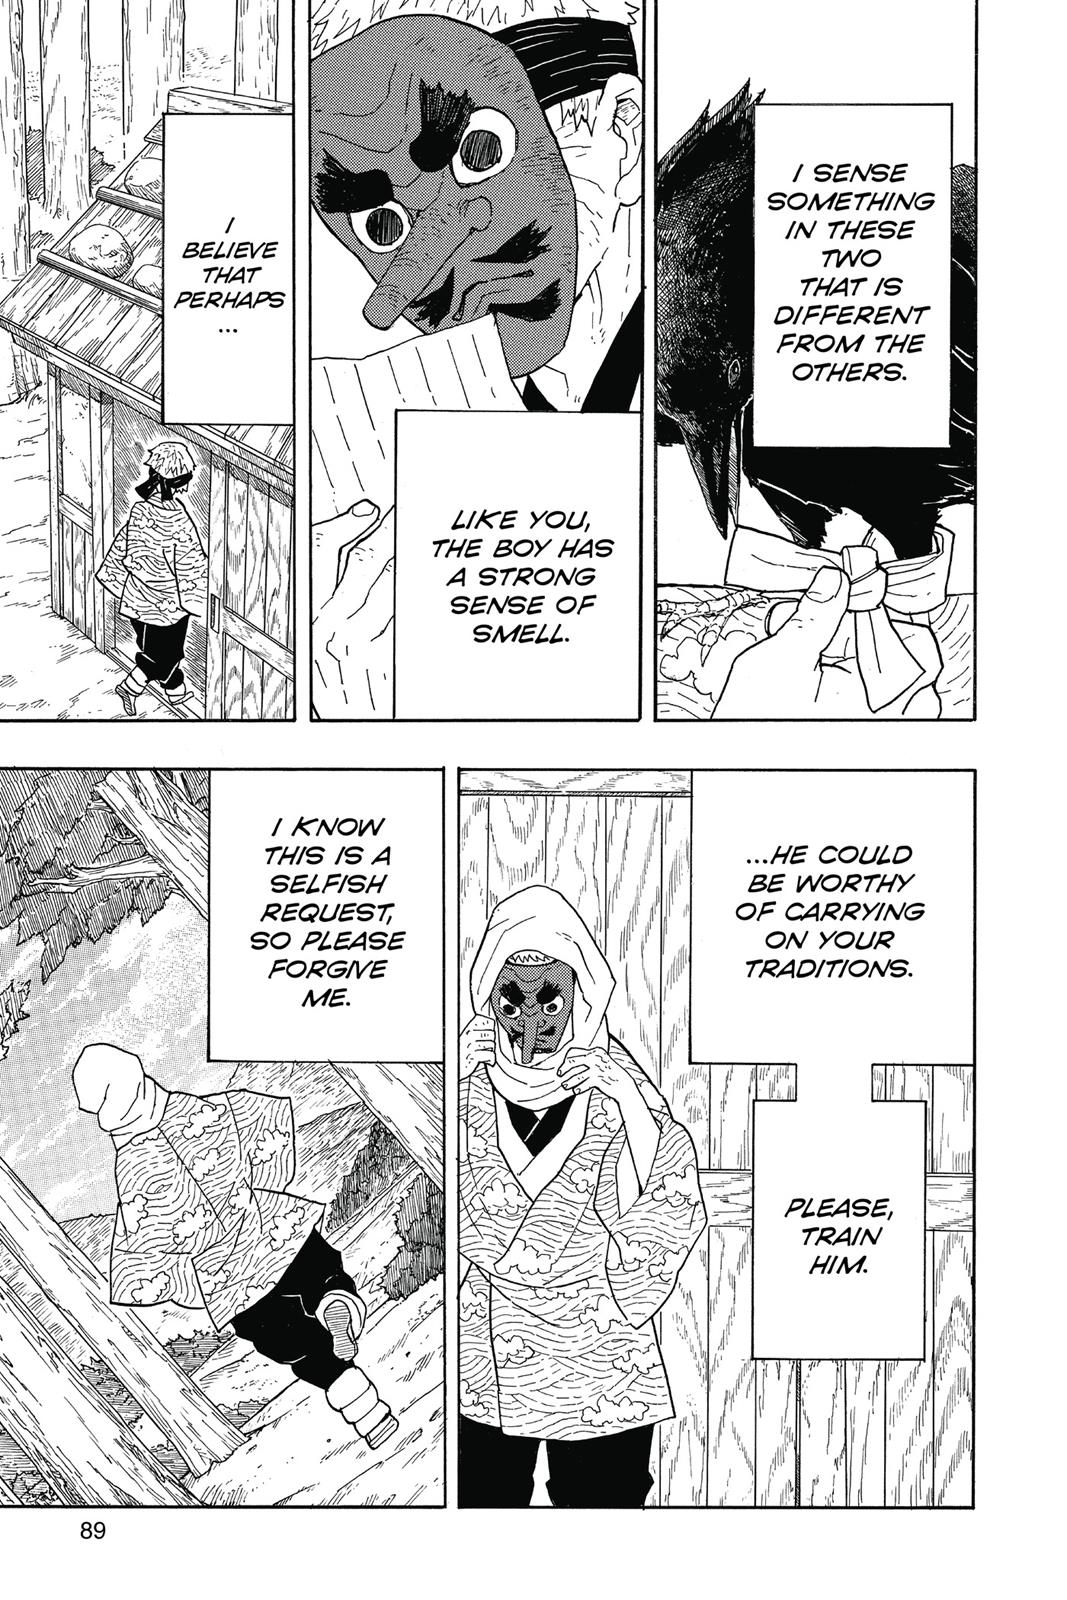 Demon Slayer Manga Manga Chapter - 3 - image 3